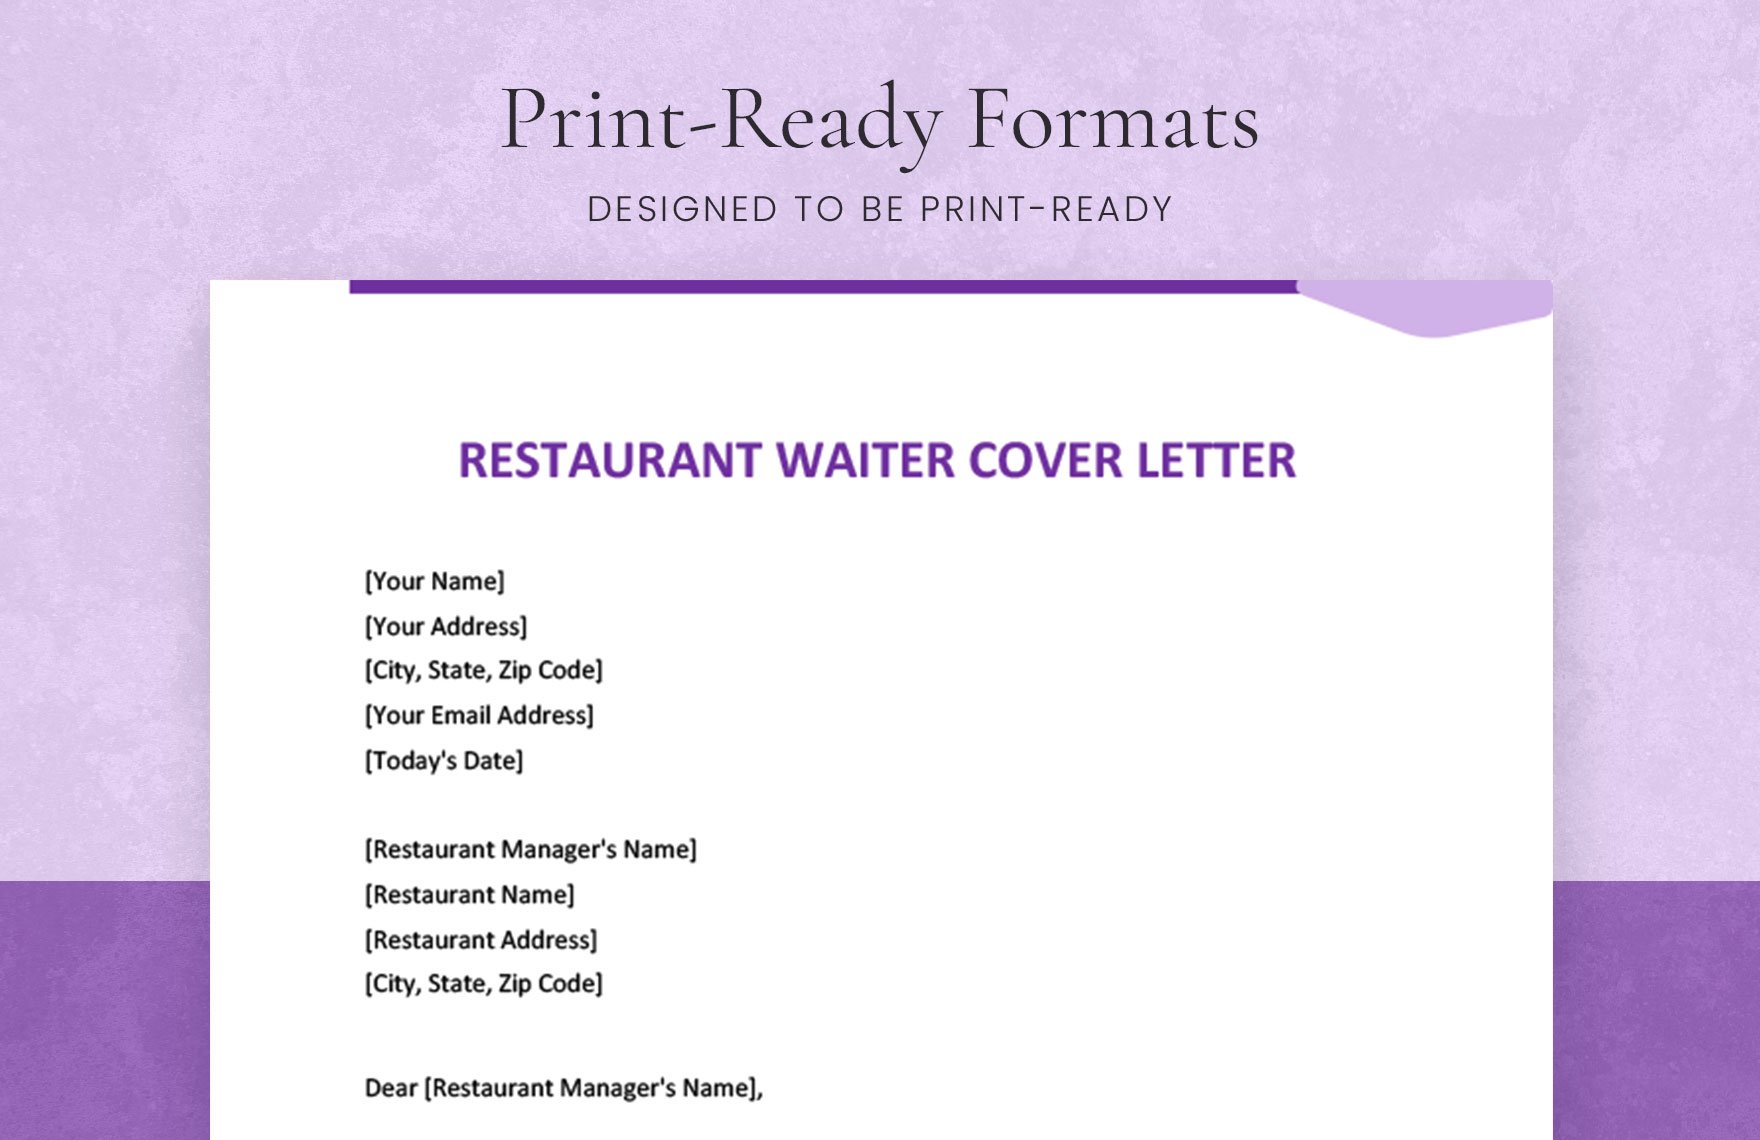 Restaurant Waiter Cover Letter